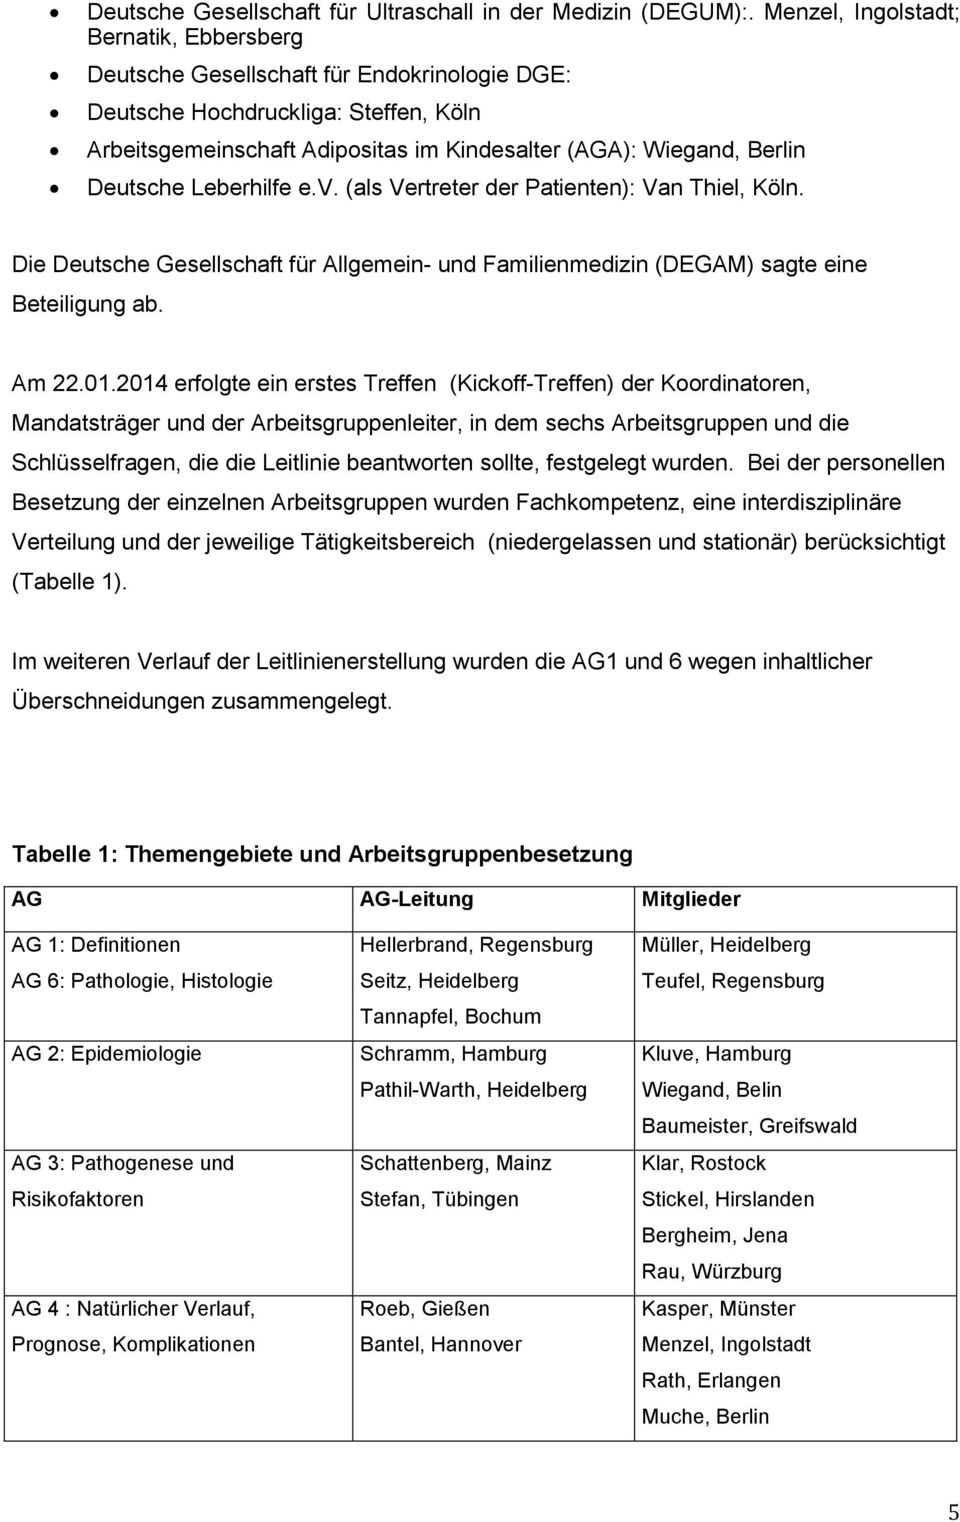 Deutsche Leberhilfe e.v. (als Vertreter der Patienten): Van Thiel, Köln. Die Deutsche Gesellschaft für Allgemein- und Familienmedizin (DEGAM) sagte eine Beteiligung ab. Am 22.01.